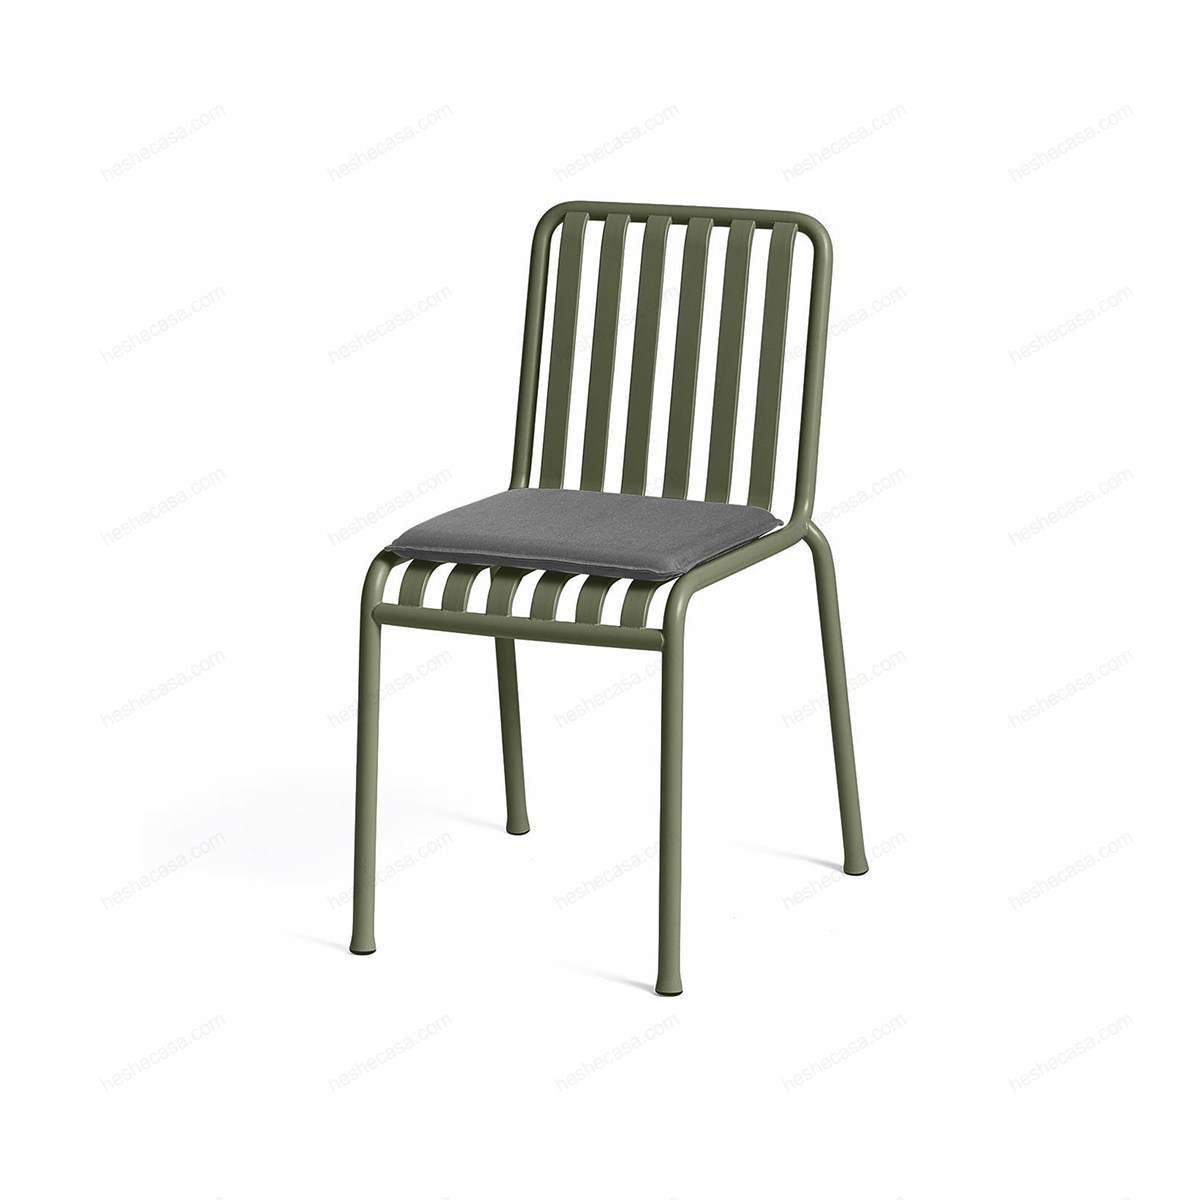 Palissade Chair & Armchair Seat Cushion 户外单椅